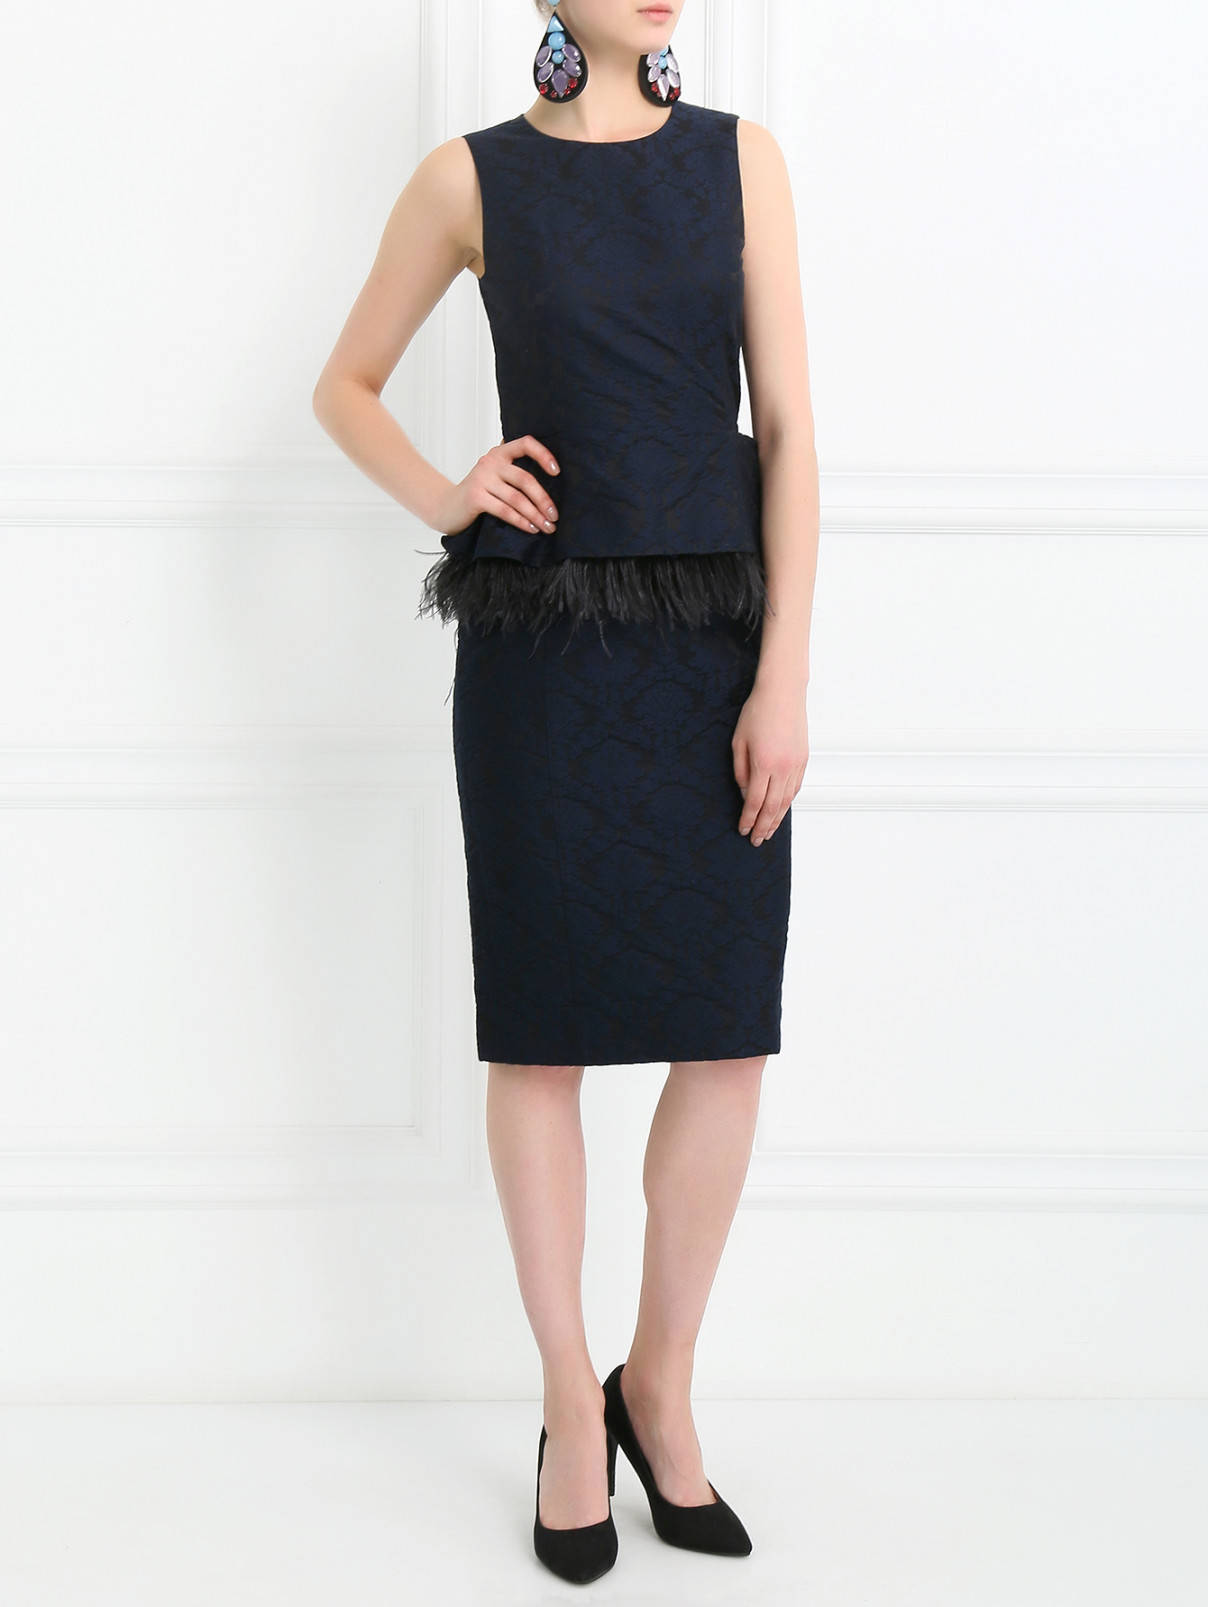 Платье-футляр с баской, декорированное перьями Michael Kors  –  Модель Общий вид  – Цвет:  Синий